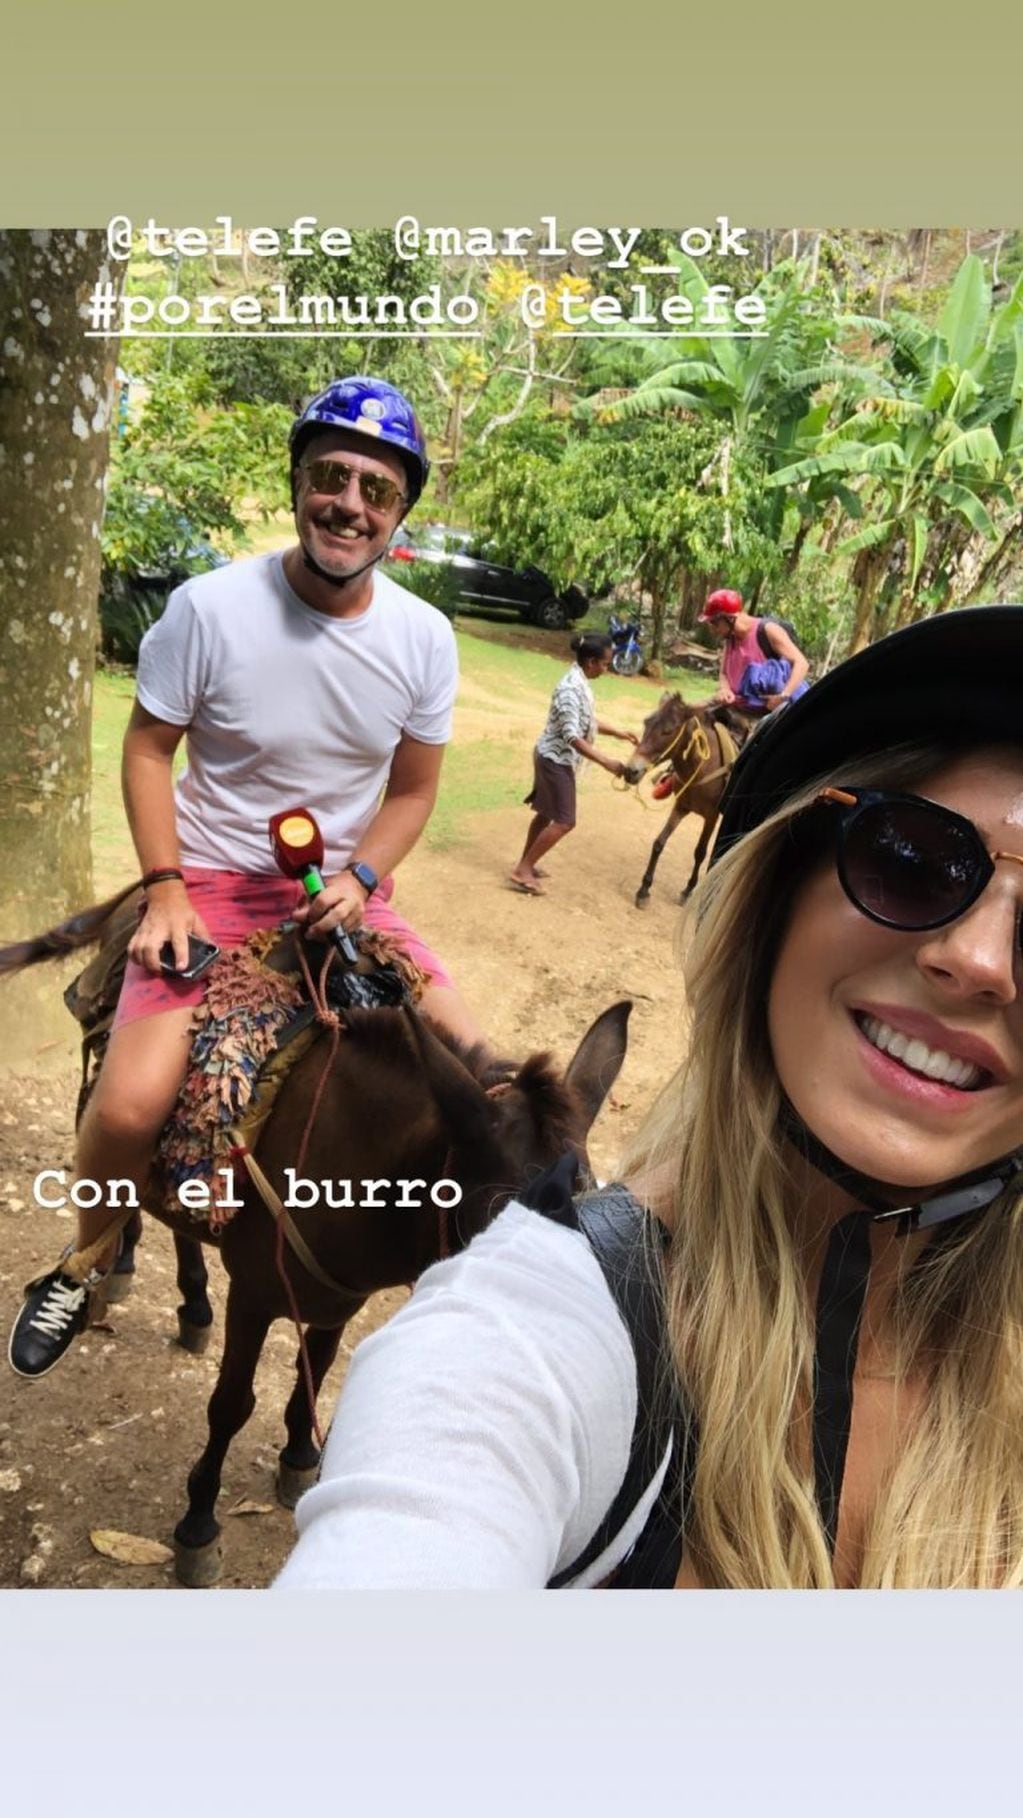 Noelia Marzol y Marley montaron un burro (Foto: Instagram/ noeliamarzol)